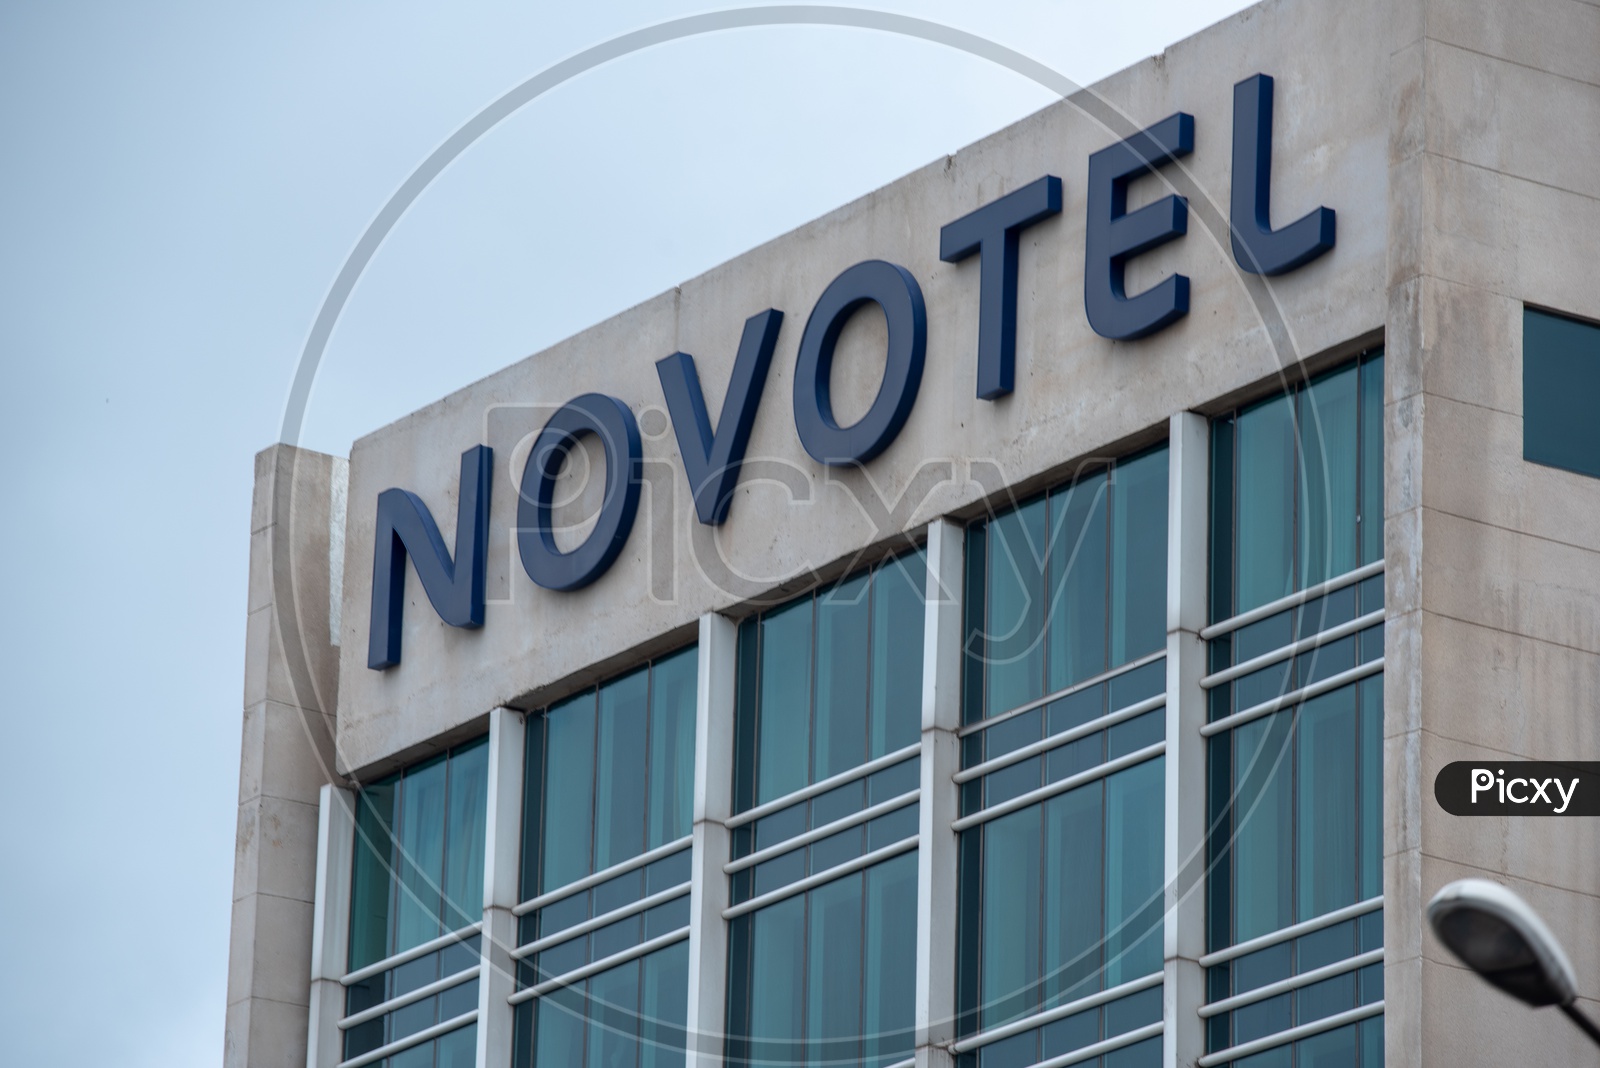 Novotel hotel name board